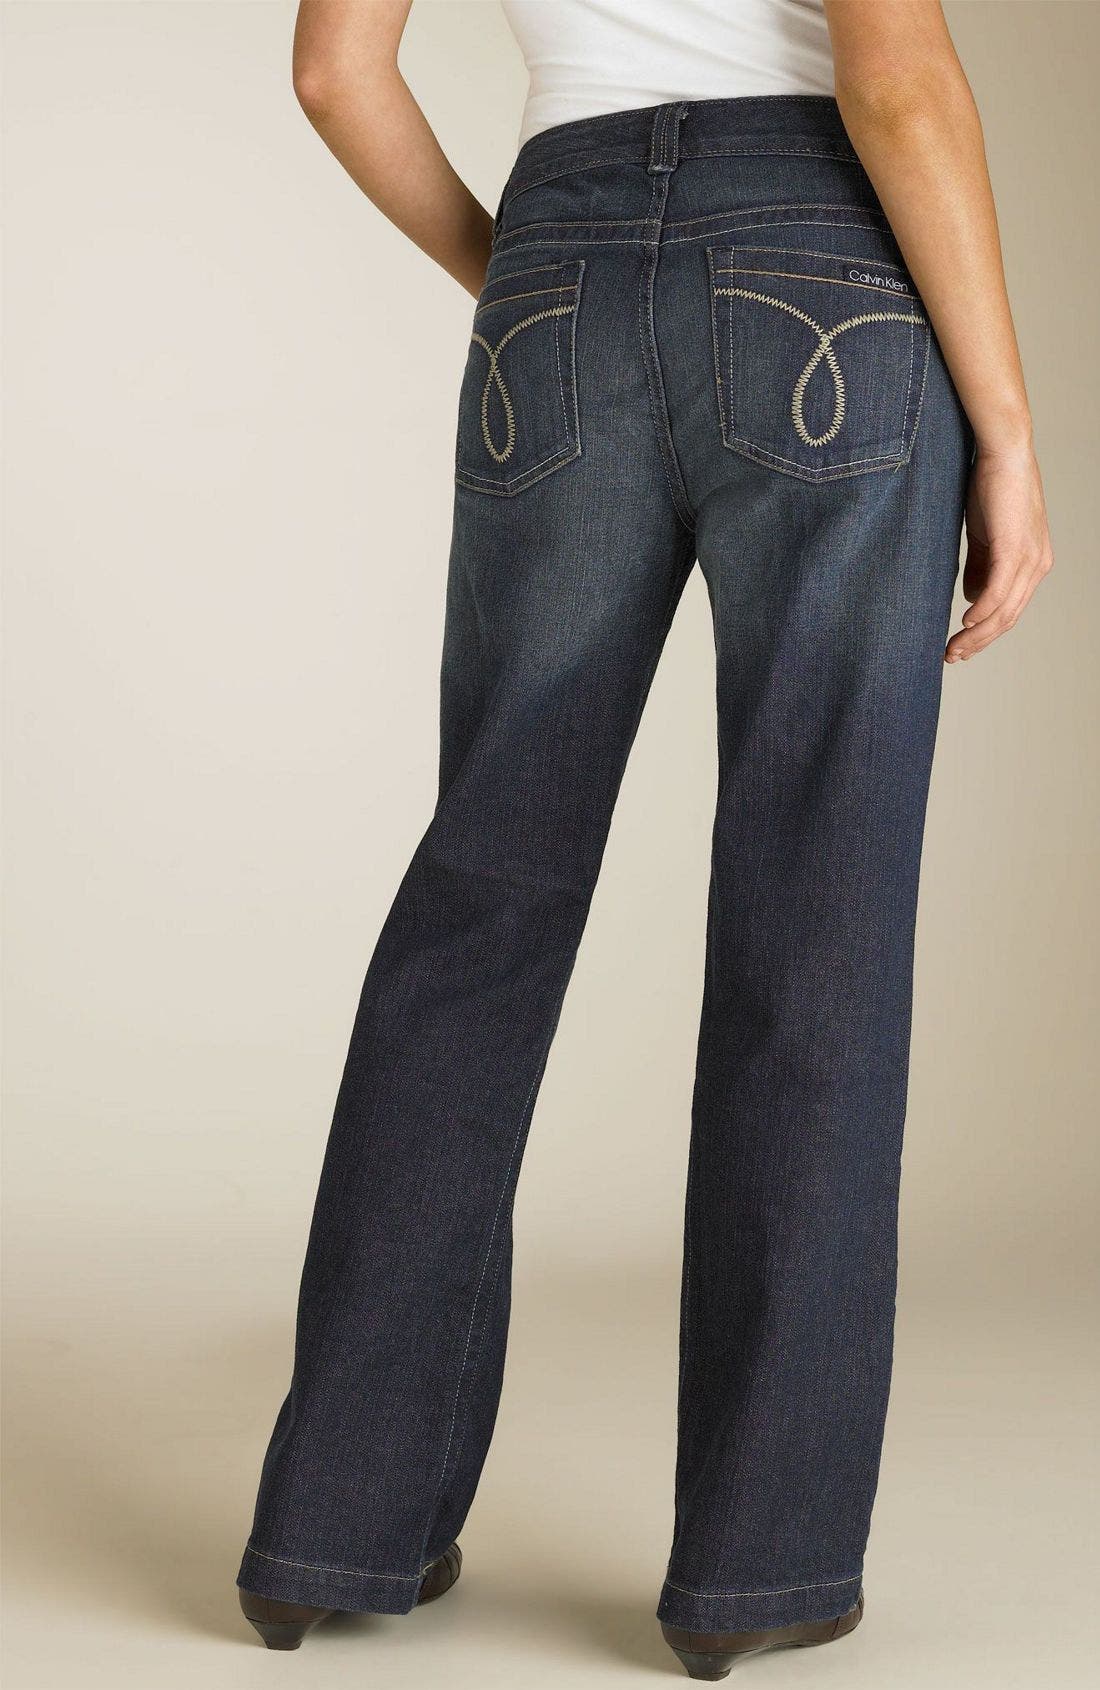 calvin klein women's stretch jeans